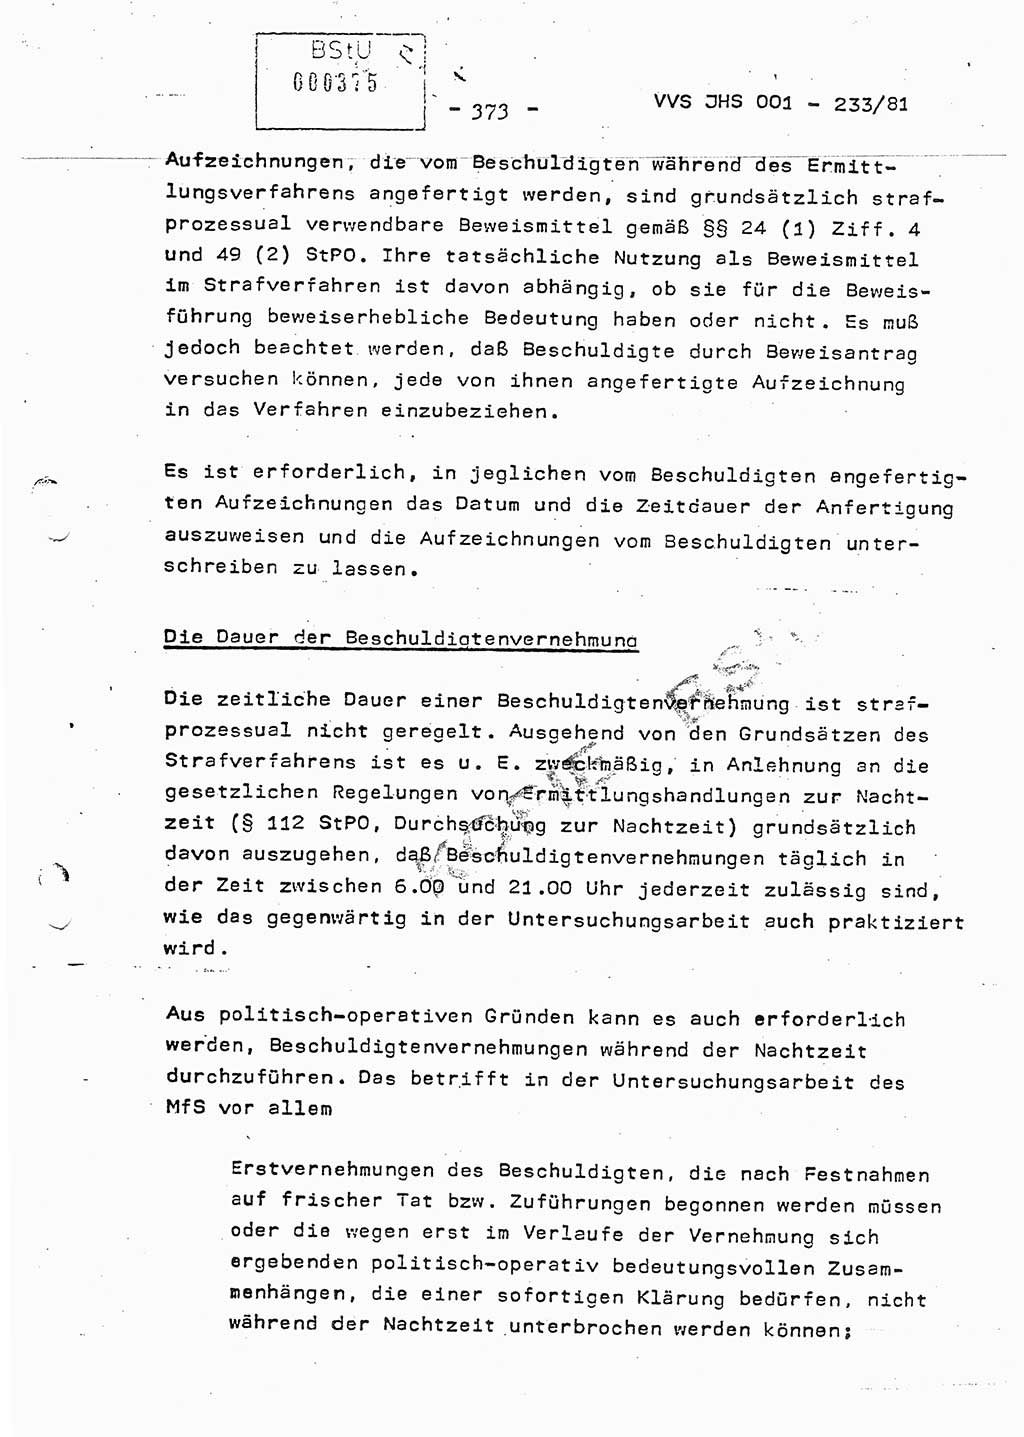 Dissertation Oberstleutnant Horst Zank (JHS), Oberstleutnant Dr. Karl-Heinz Knoblauch (JHS), Oberstleutnant Gustav-Adolf Kowalewski (HA Ⅸ), Oberstleutnant Wolfgang Plötner (HA Ⅸ), Ministerium für Staatssicherheit (MfS) [Deutsche Demokratische Republik (DDR)], Juristische Hochschule (JHS), Vertrauliche Verschlußsache (VVS) o001-233/81, Potsdam 1981, Blatt 373 (Diss. MfS DDR JHS VVS o001-233/81 1981, Bl. 373)